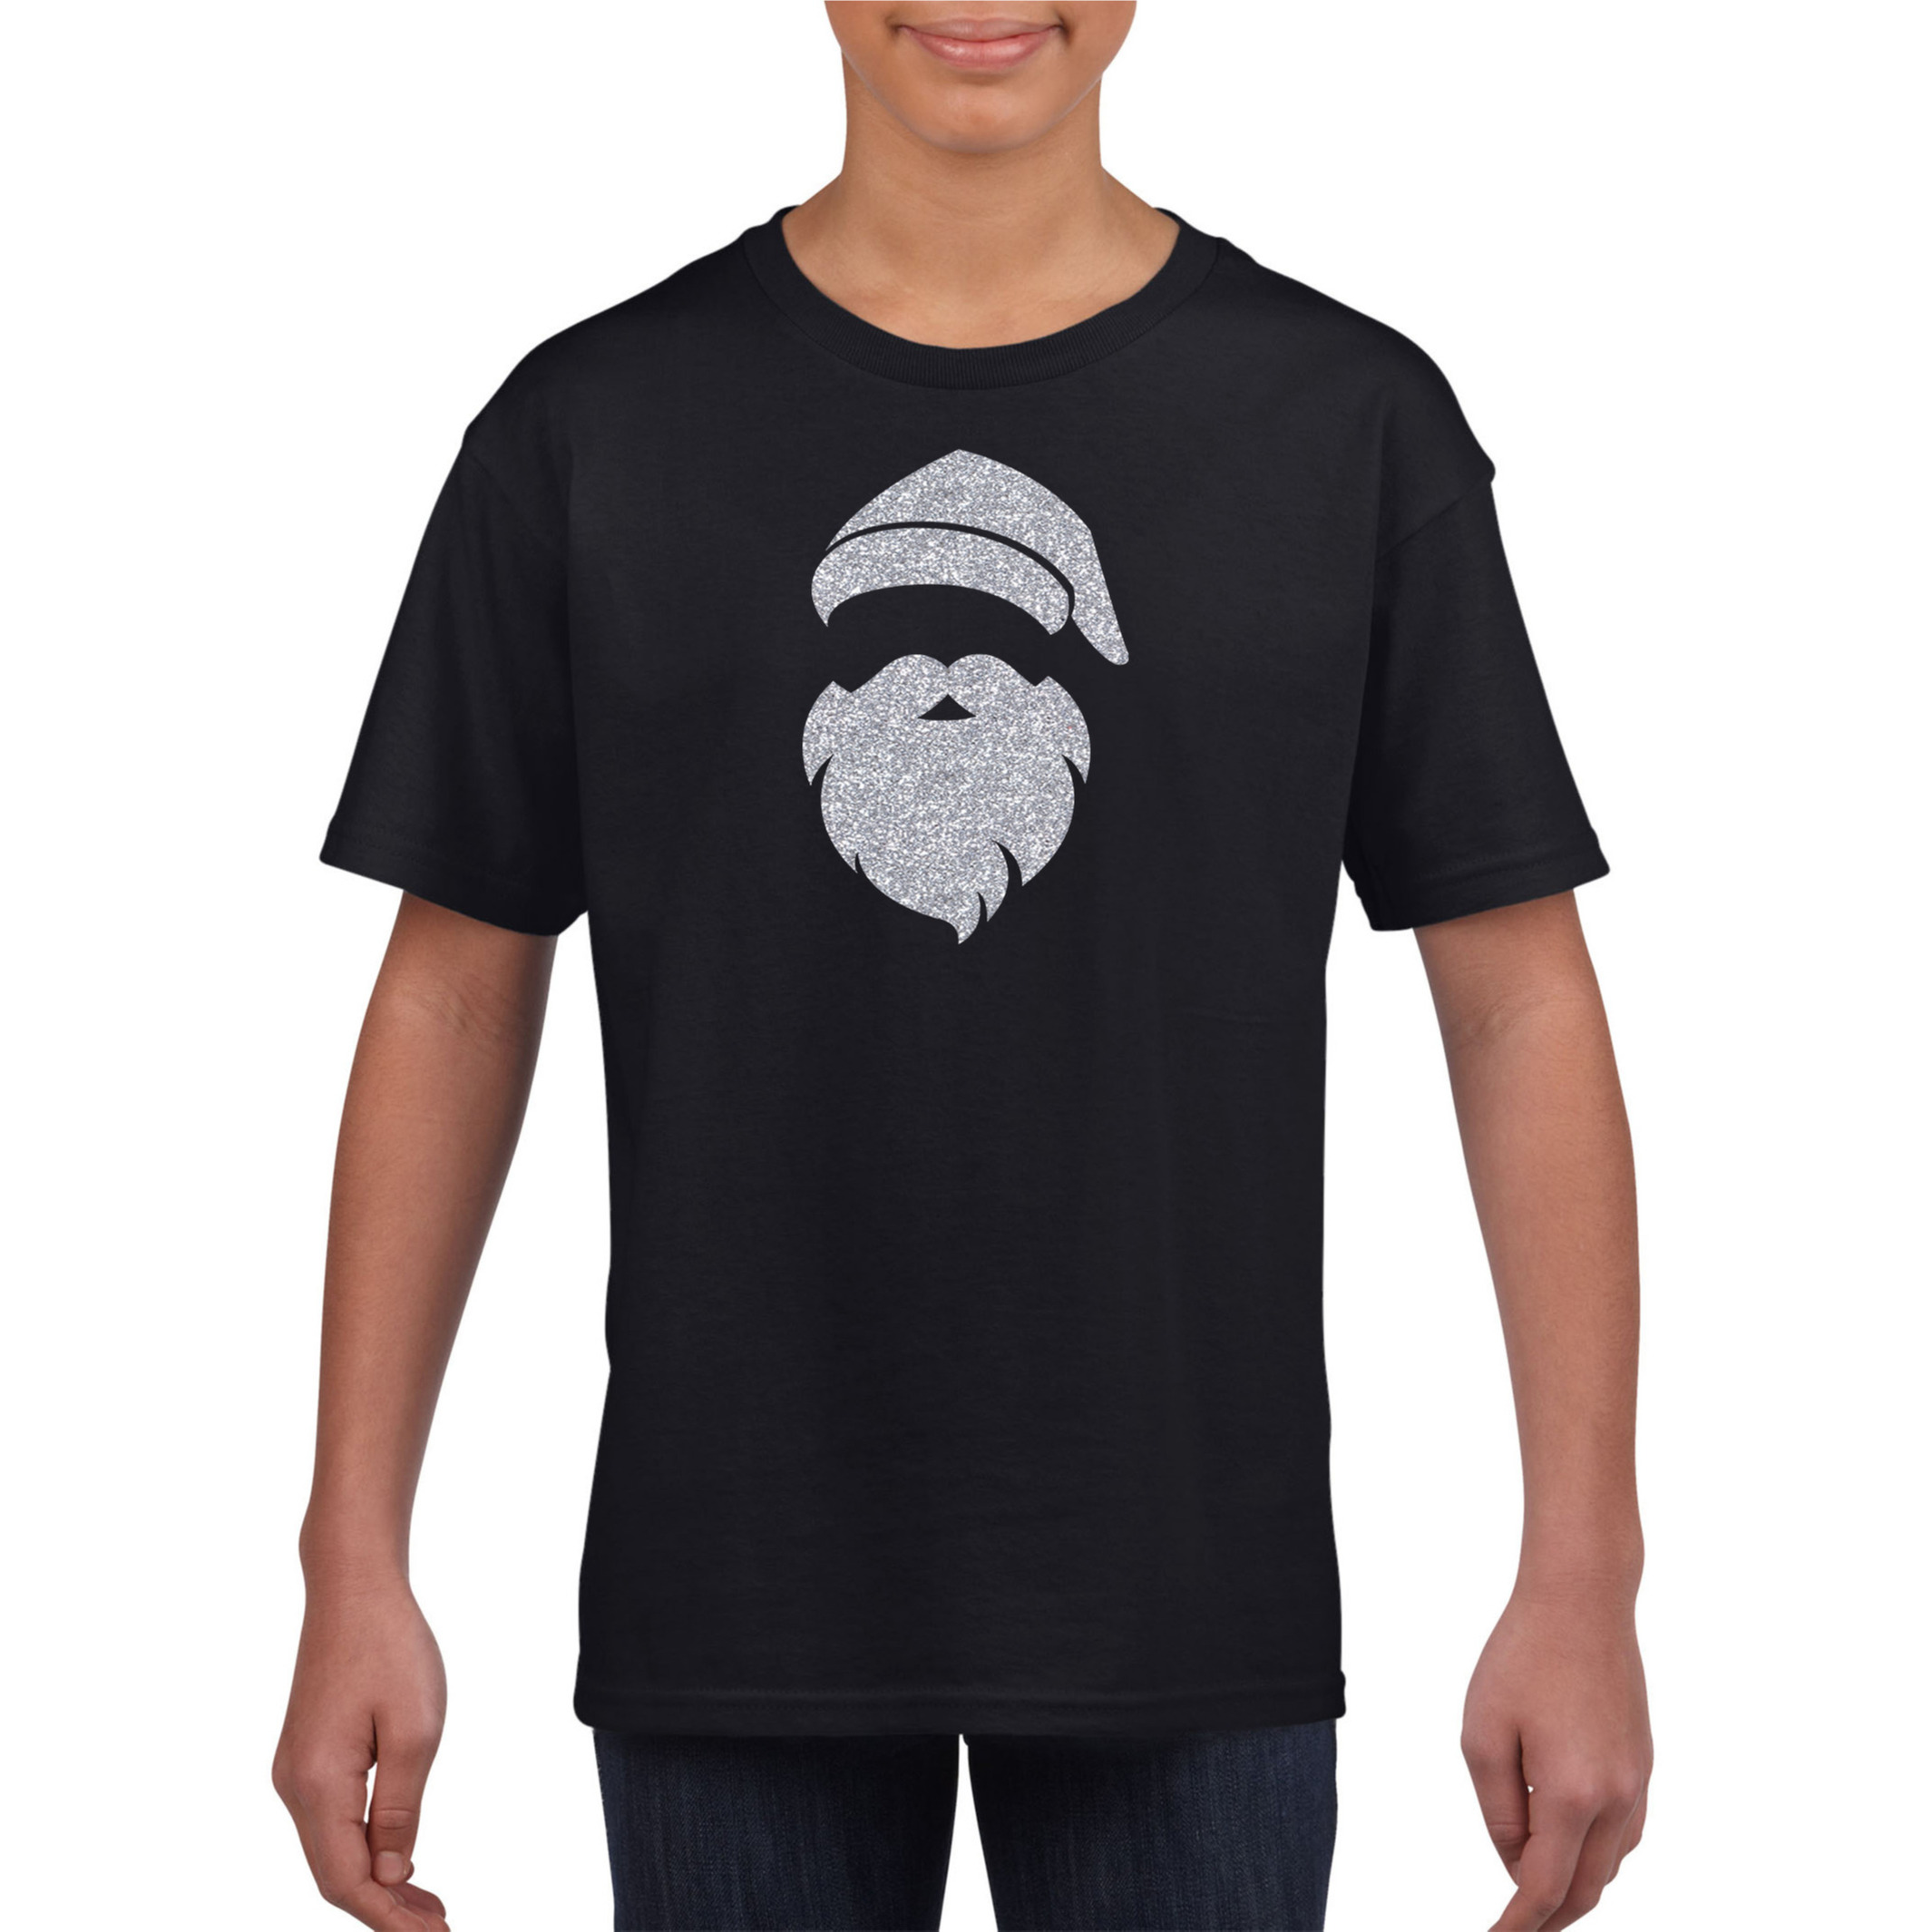 Kerstman hoofd Kerst t-shirt zwart voor kinderen met zilveren glitter bedrukking